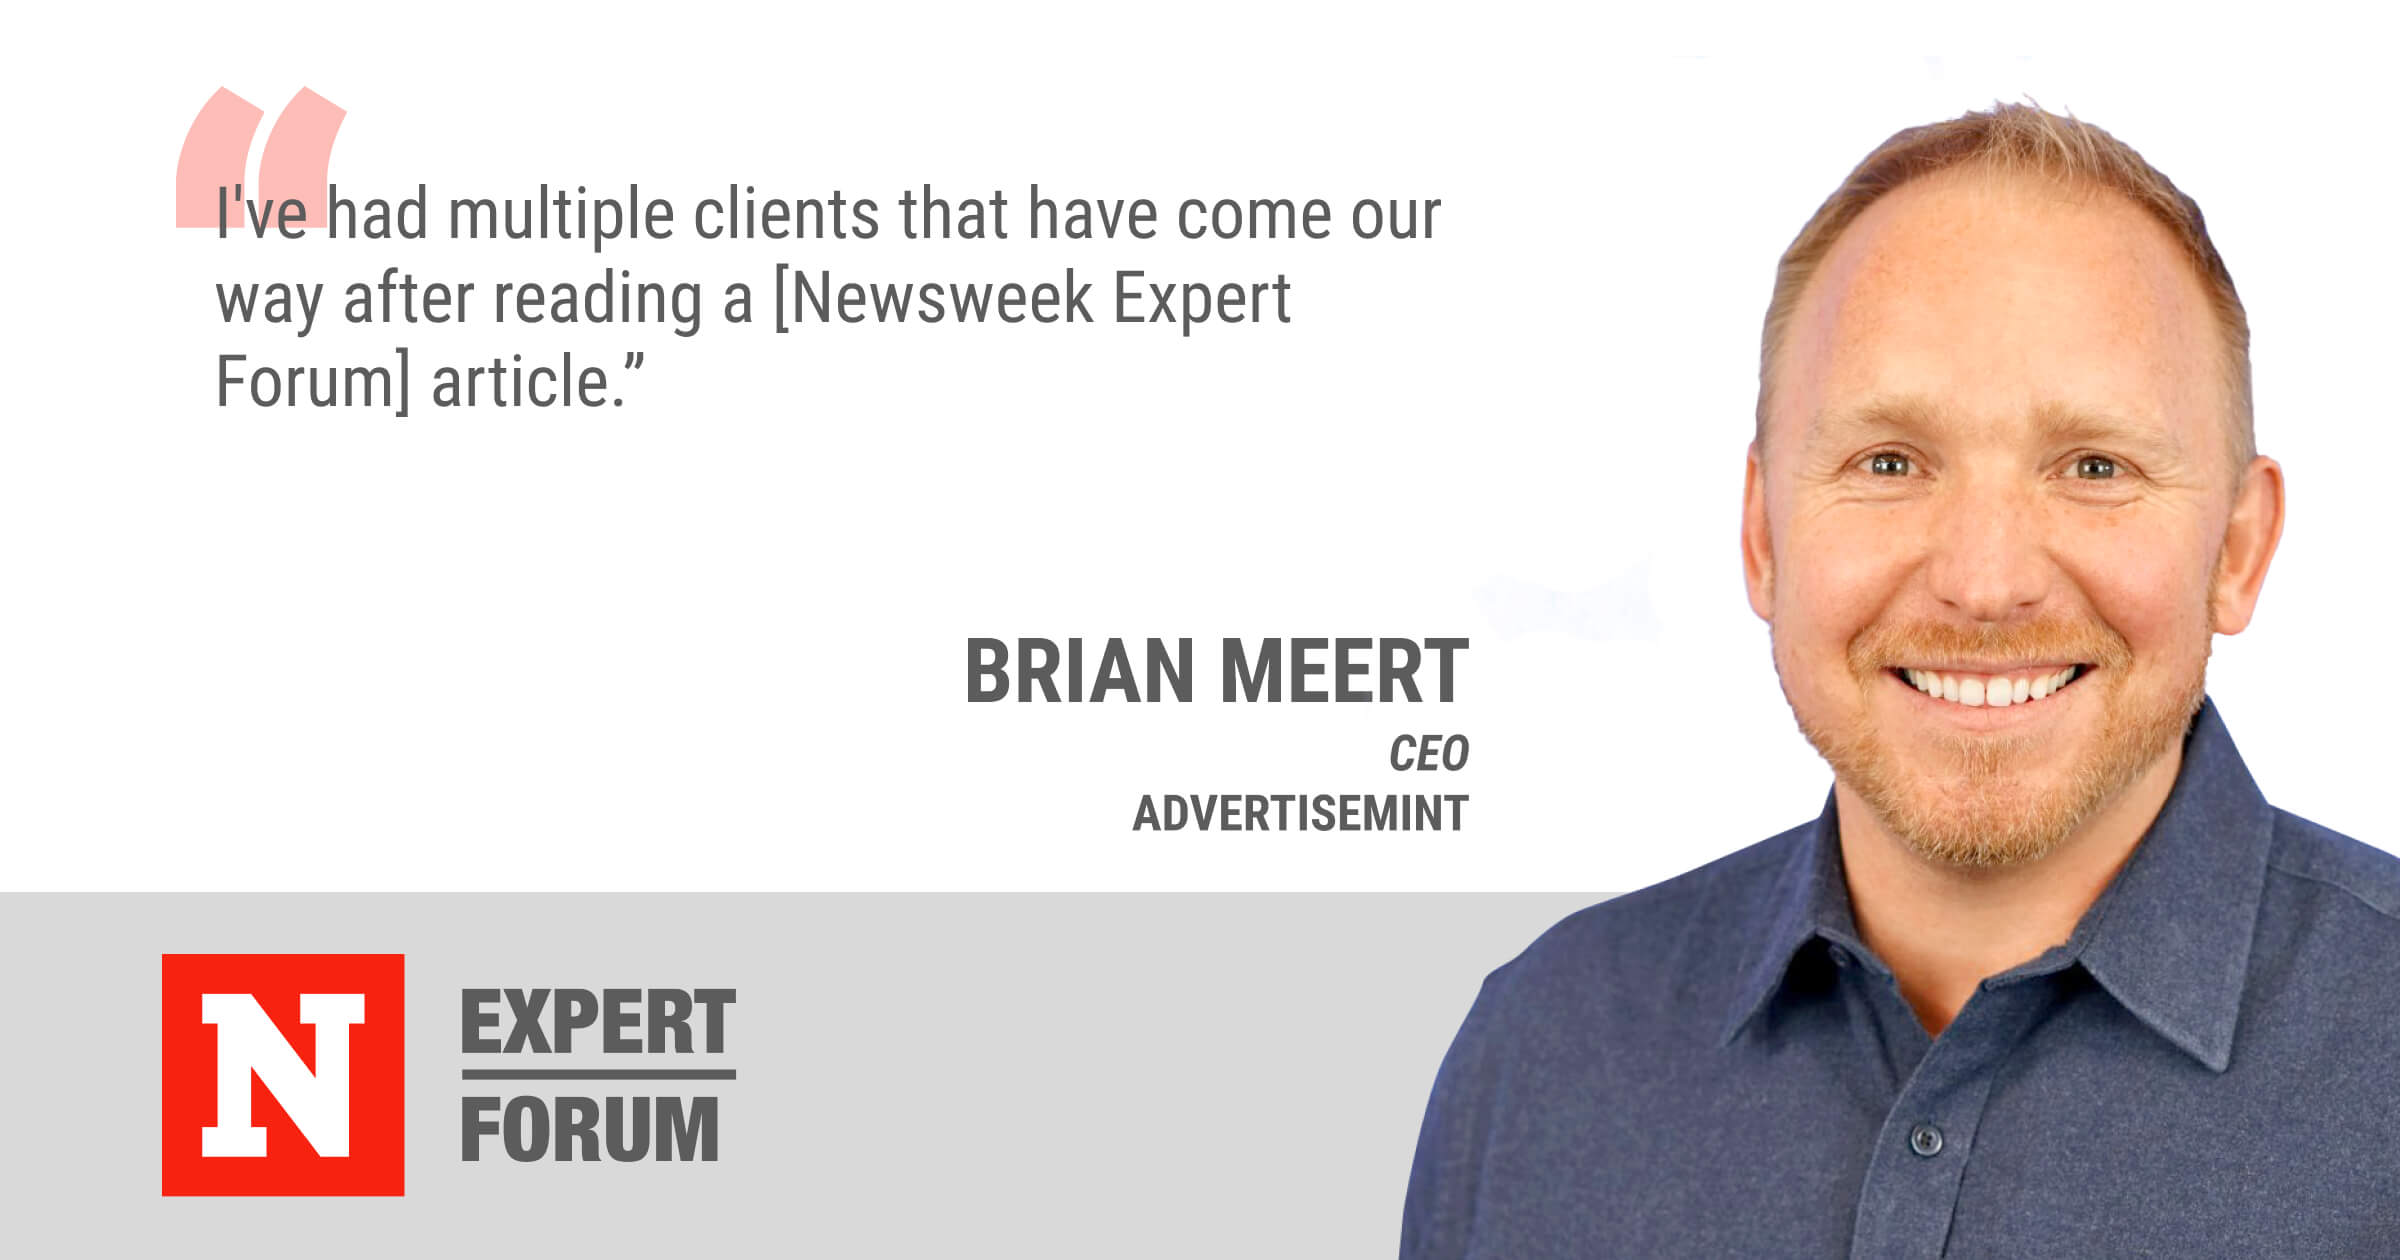 Brian Meert Lands New Business Through Newsweek Expert Forum Content